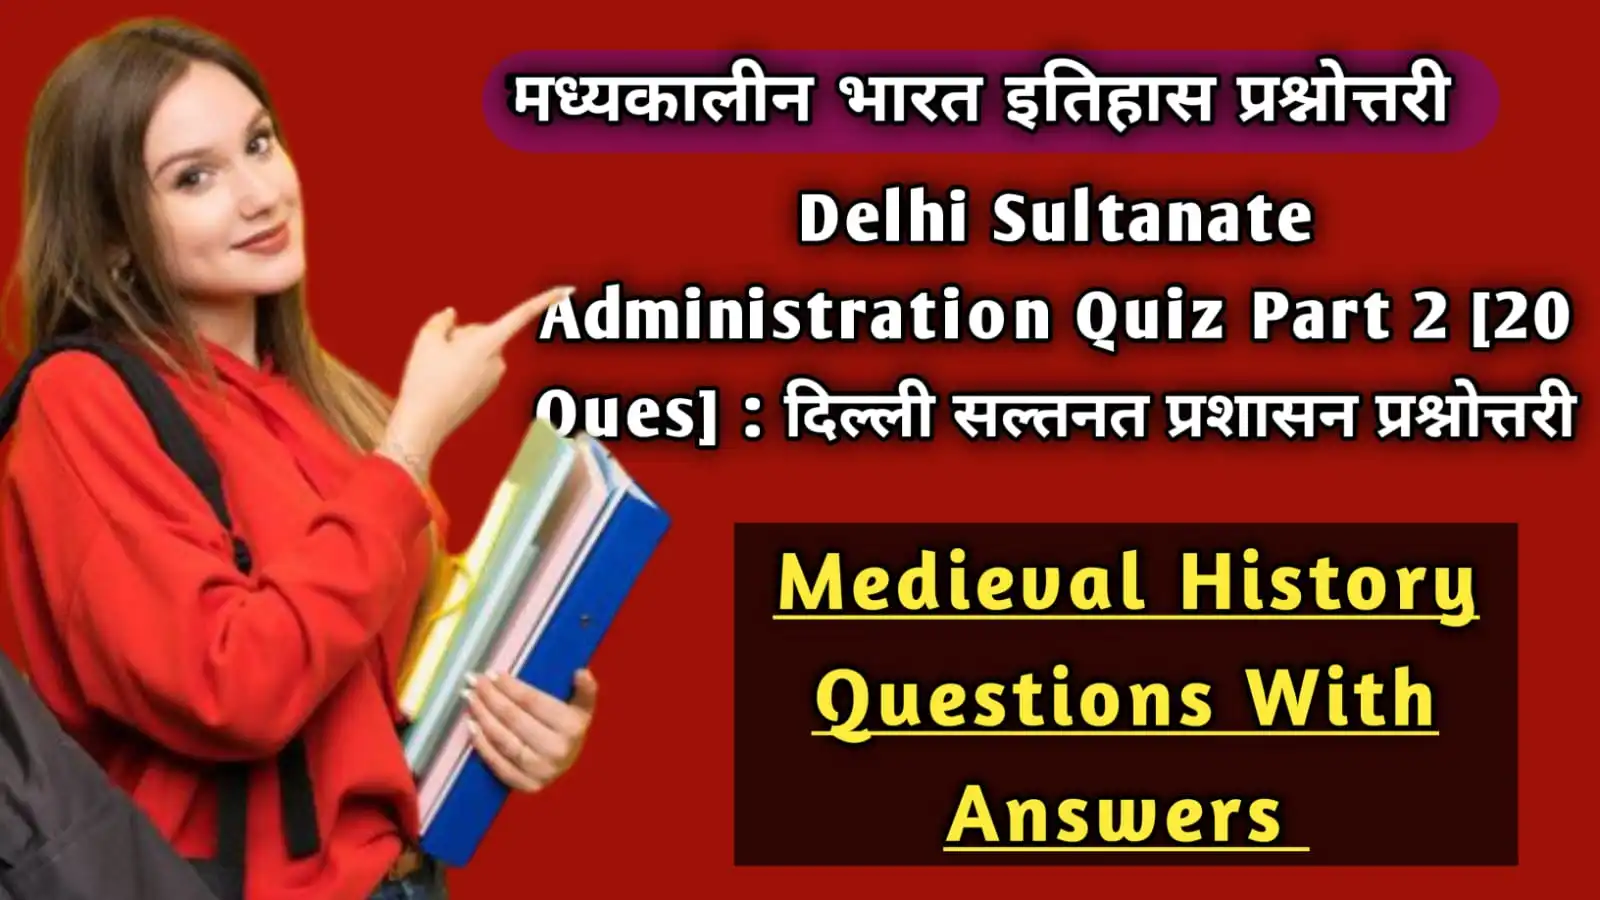 Delhi Sultanate Literature Quiz Part 2